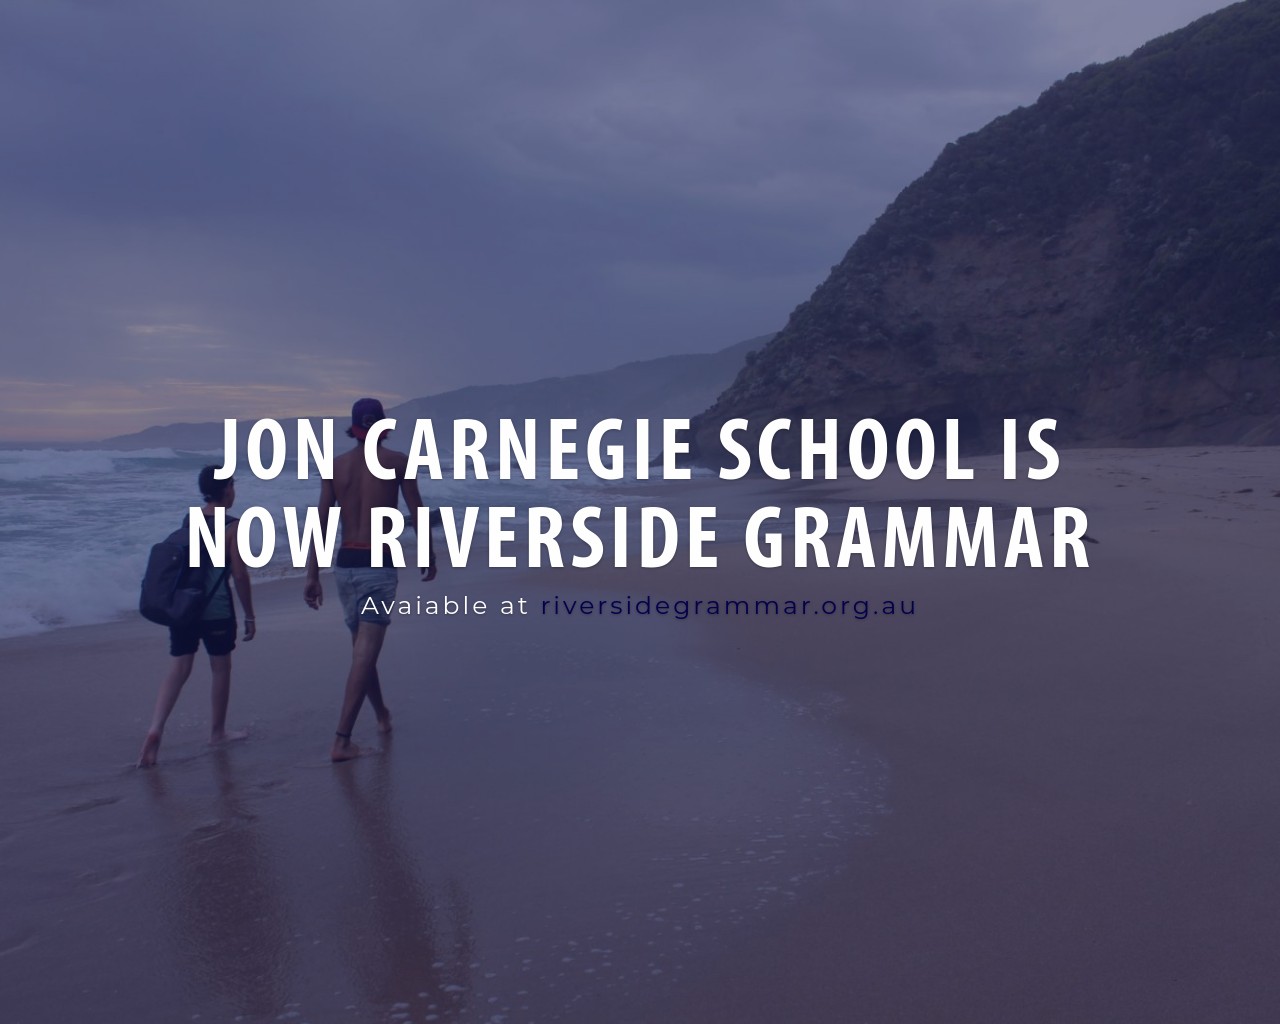 Jon Carnegie School